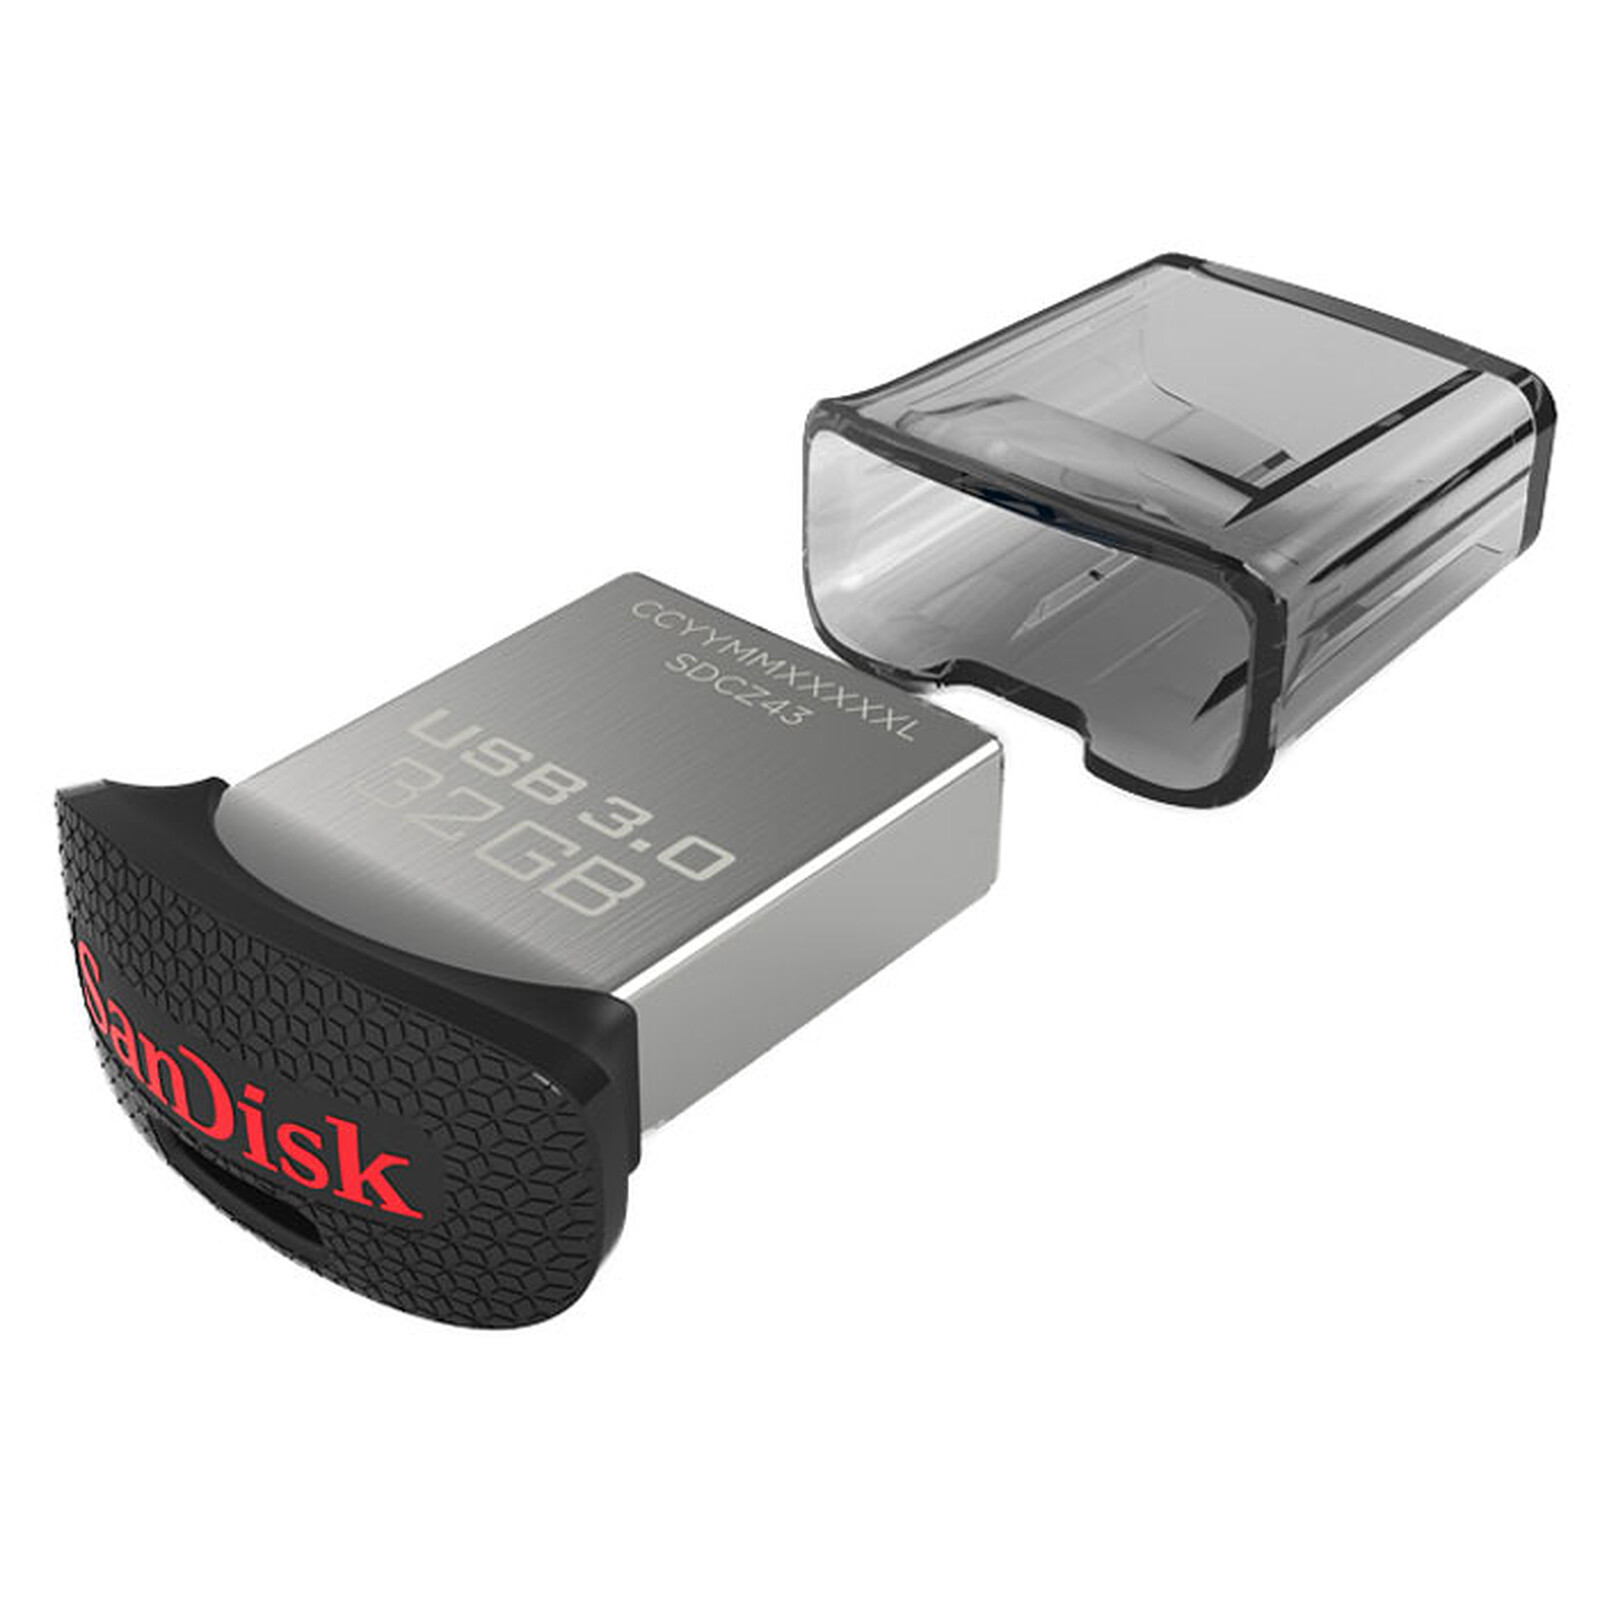 La clé USB Sandisk 128 Go est à tout petit prix, c'est le moment d'en  profiter